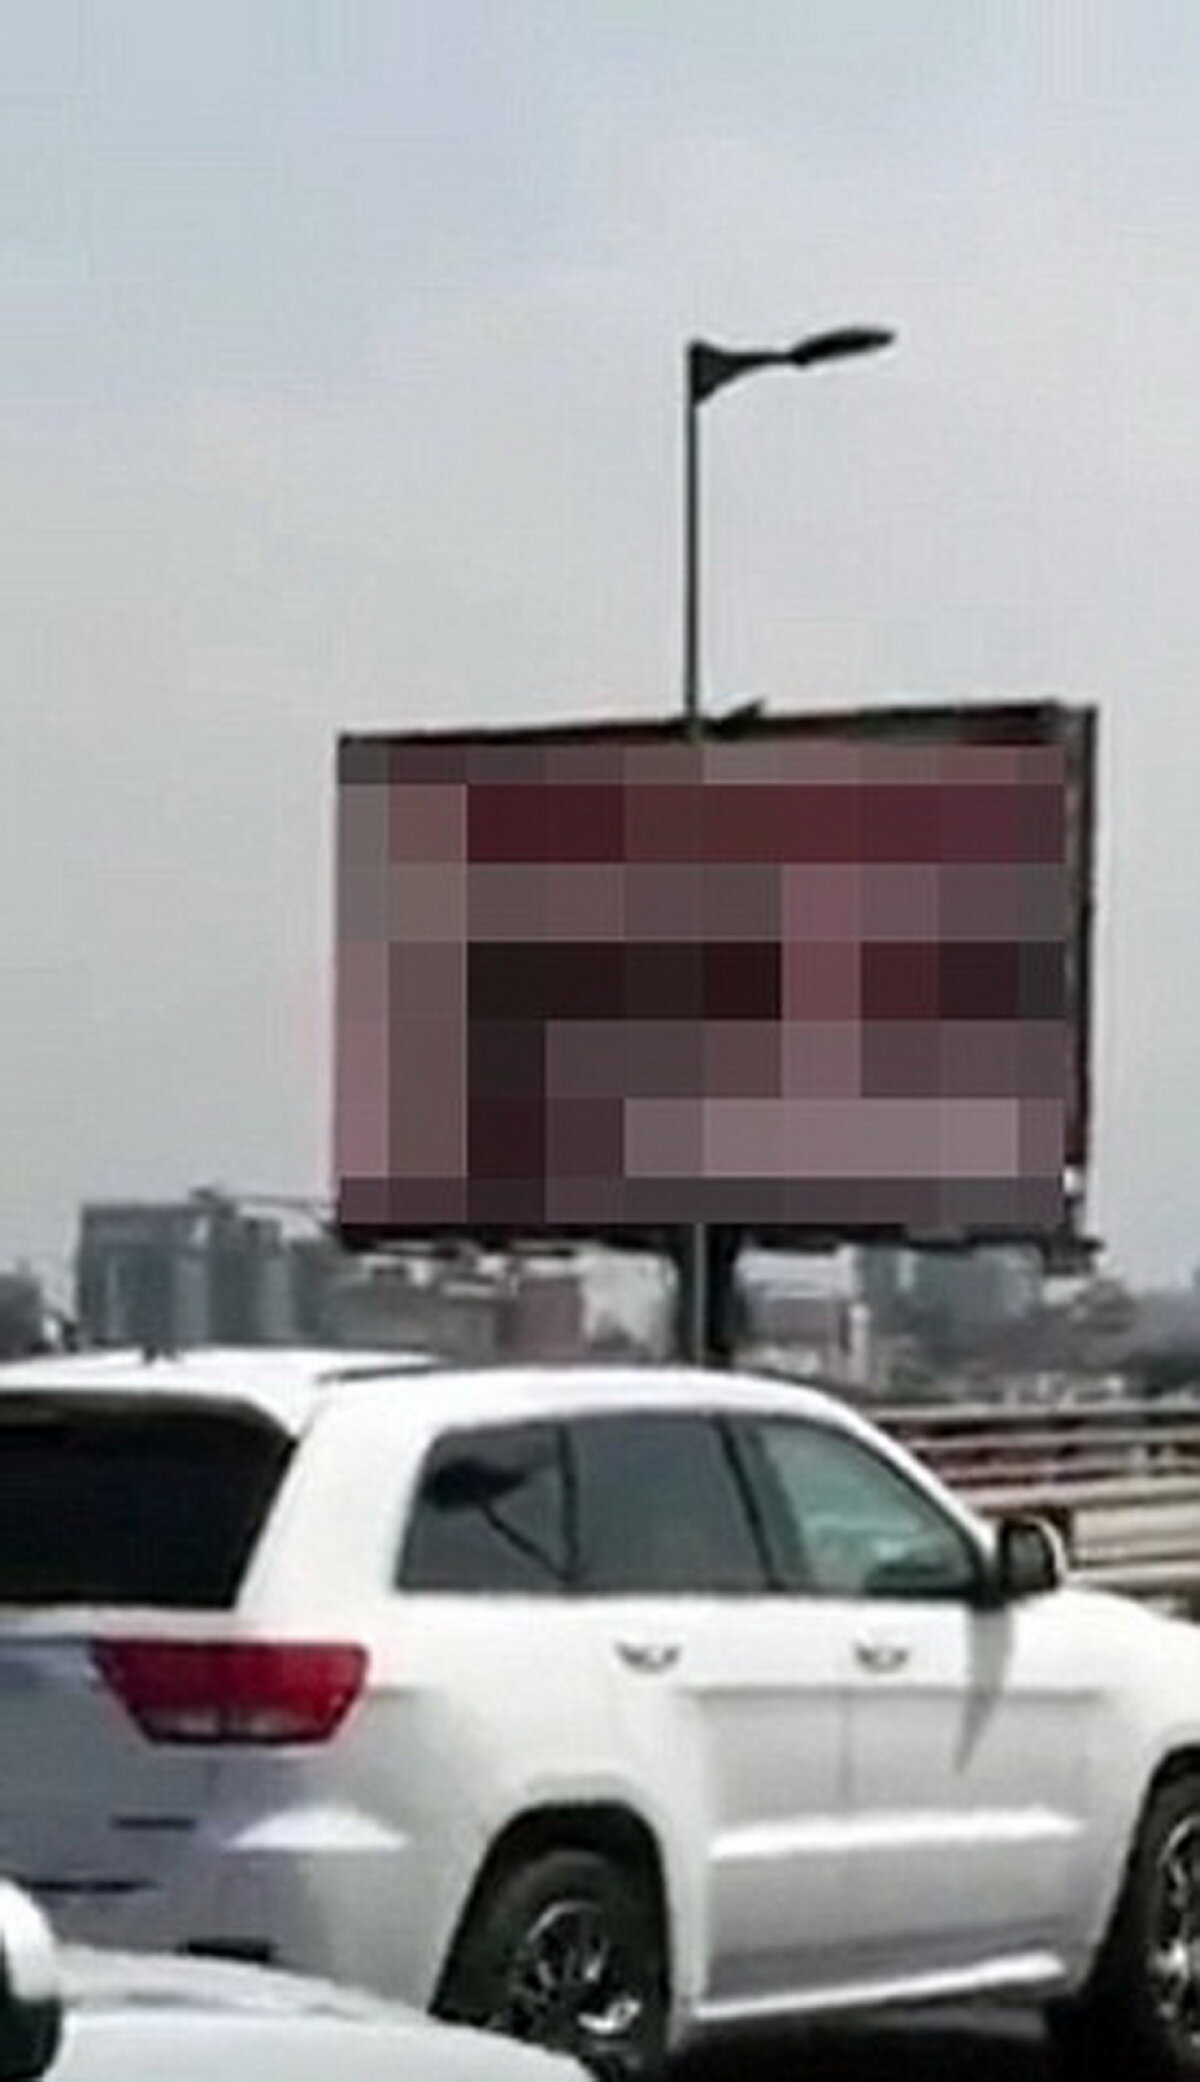 VIDEO Imagini indecente pe un ecran publicitar de pe autostradă